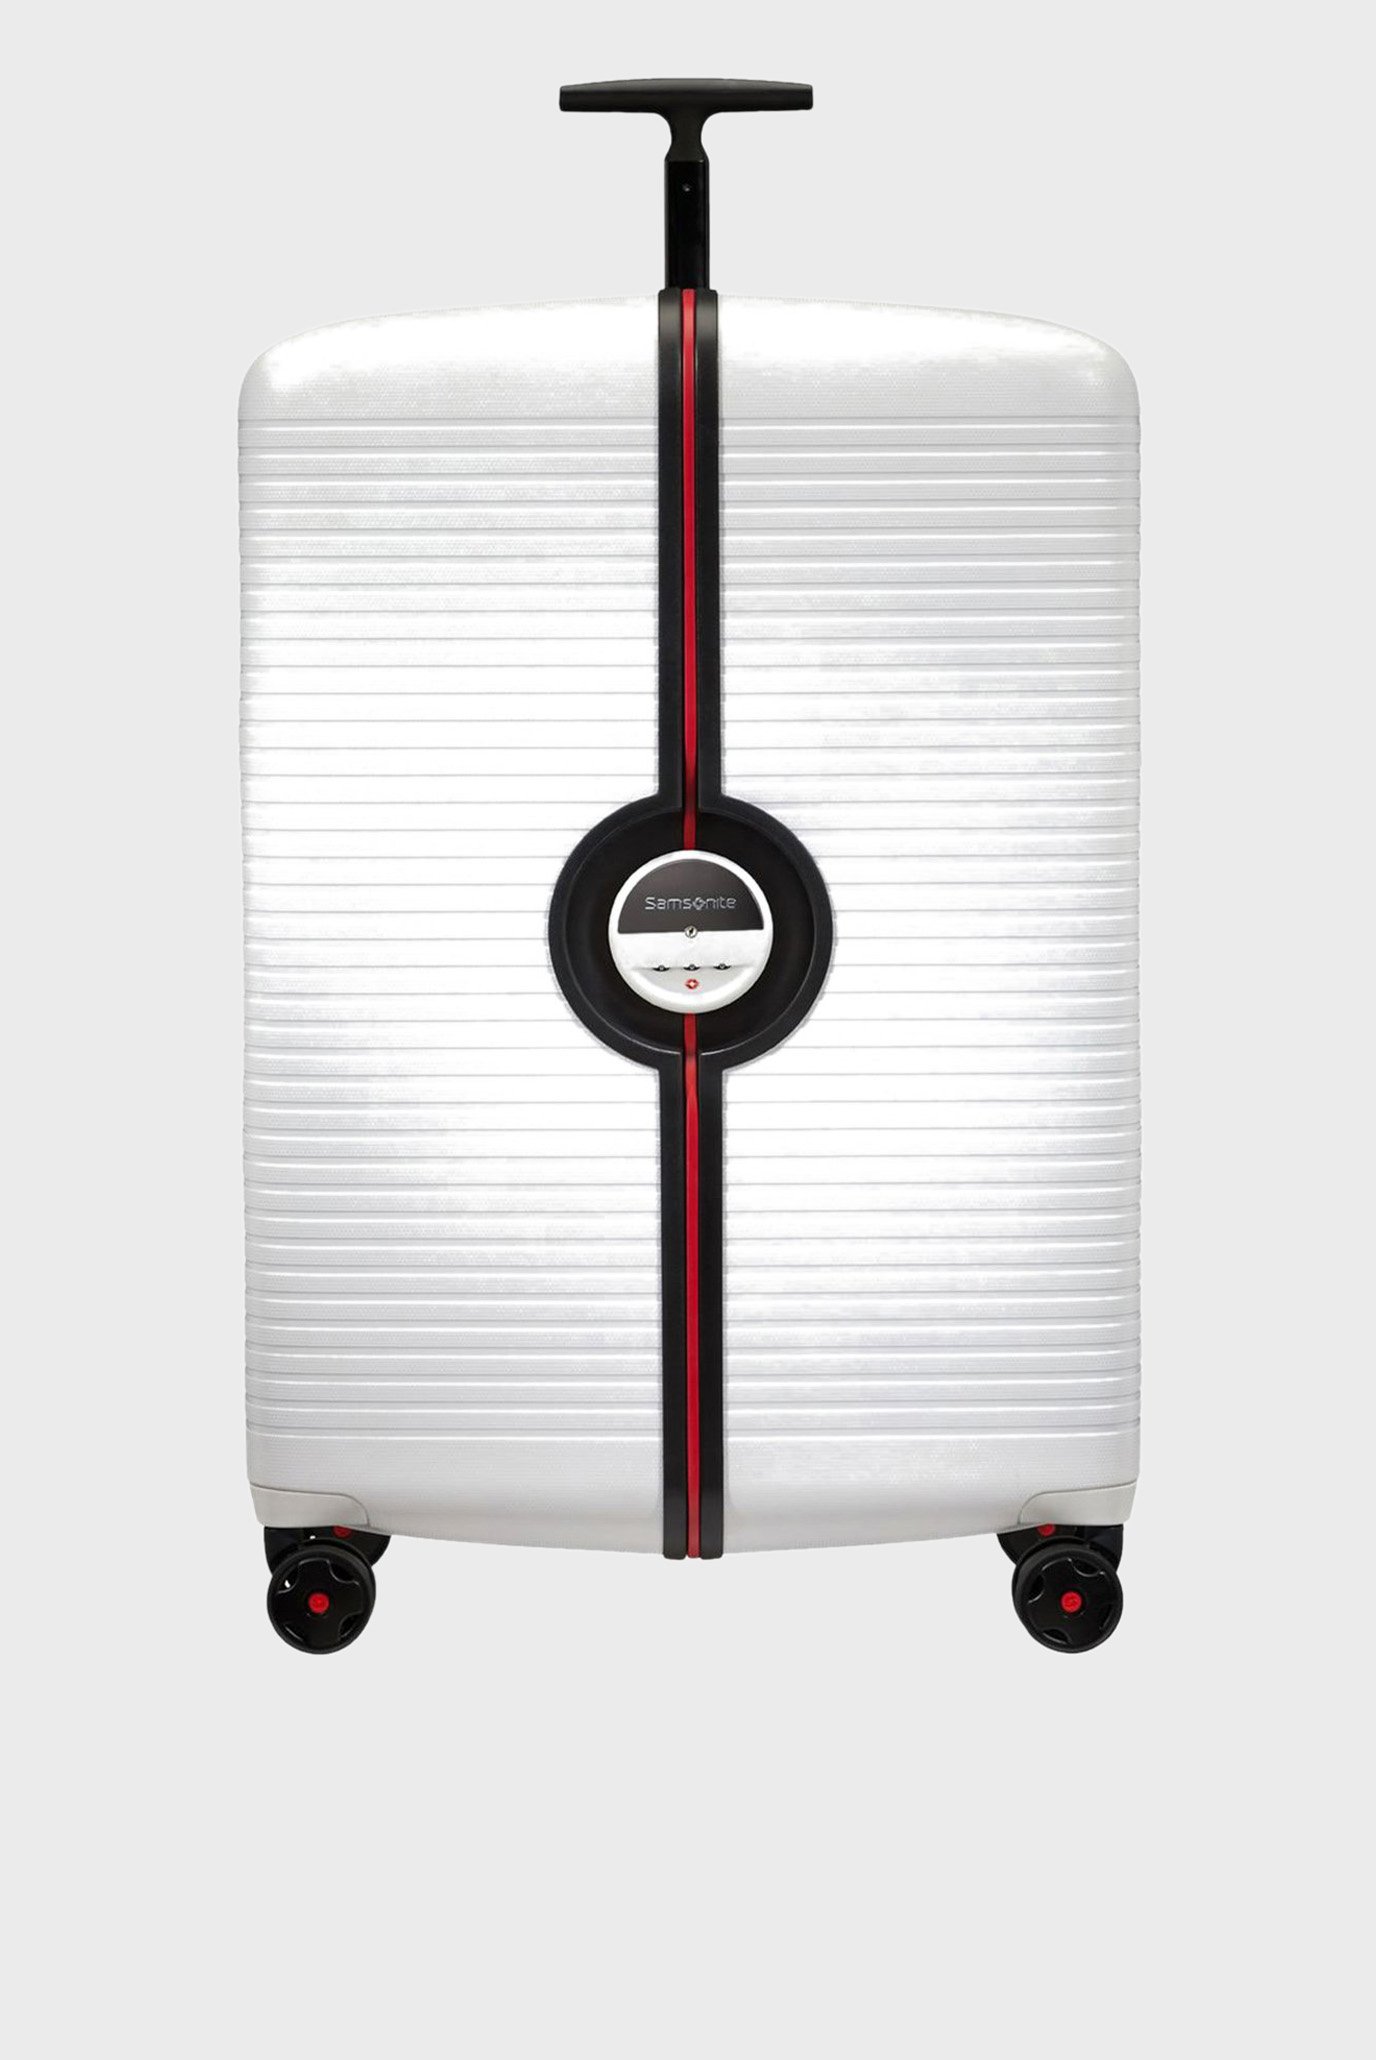 Біла валіза 76 см Ibon WHITE 1